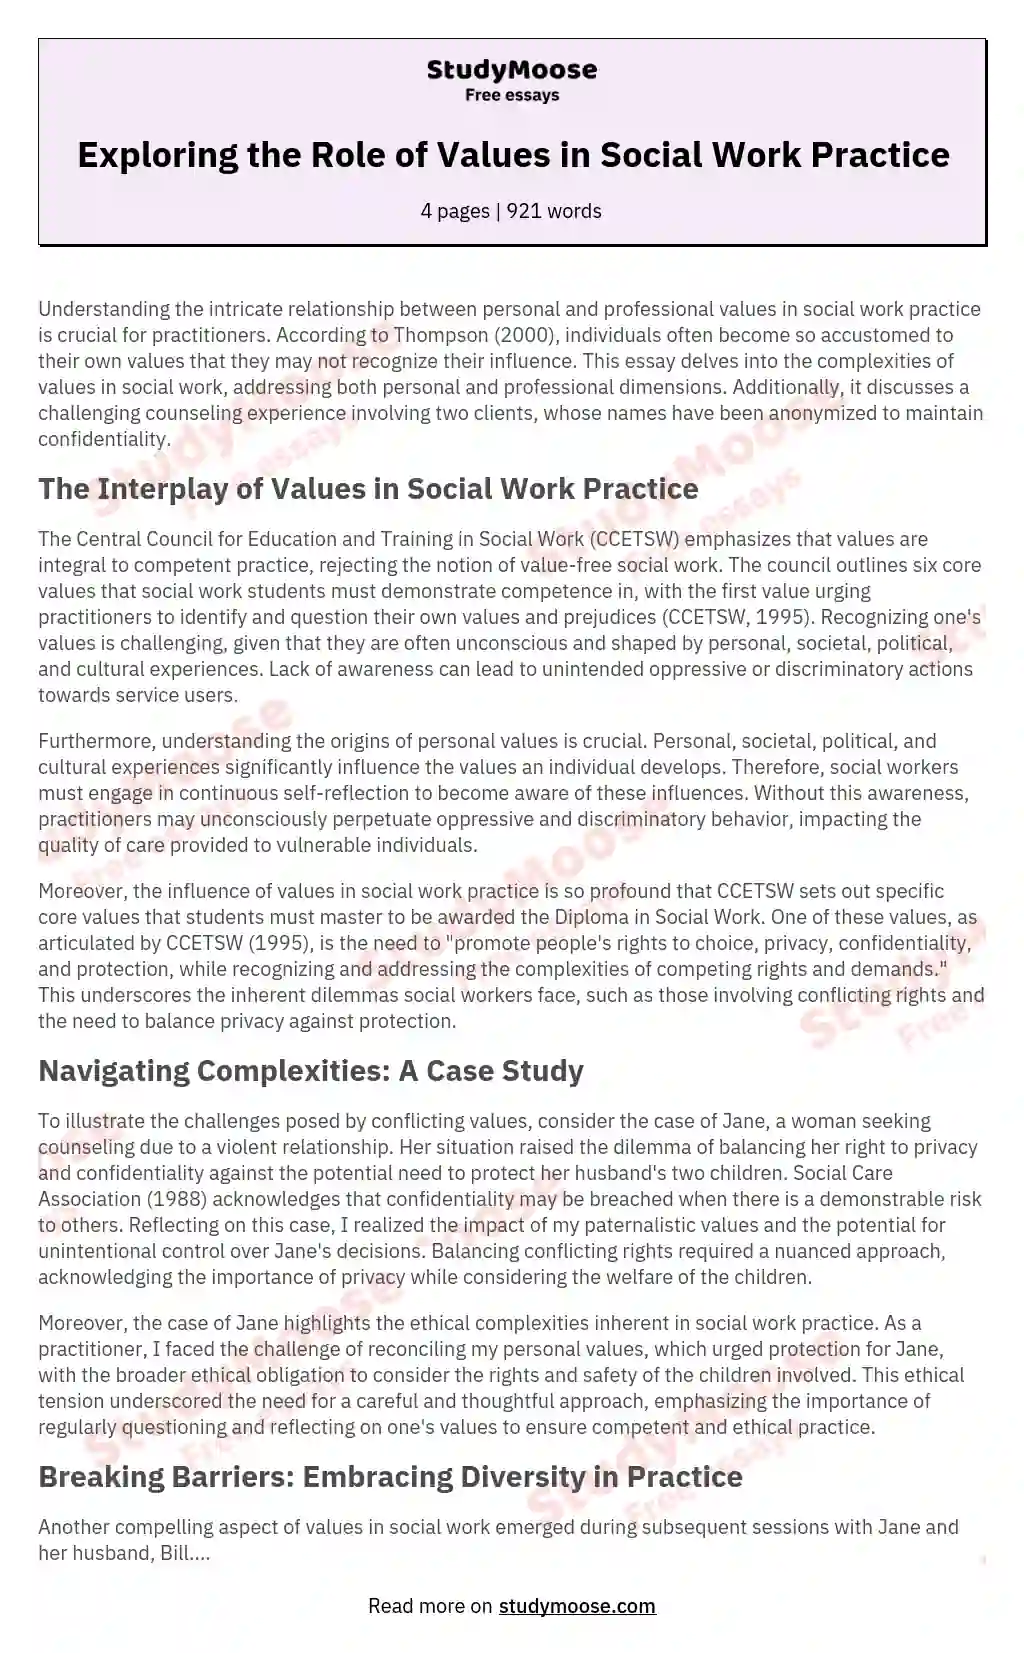 social work values essay